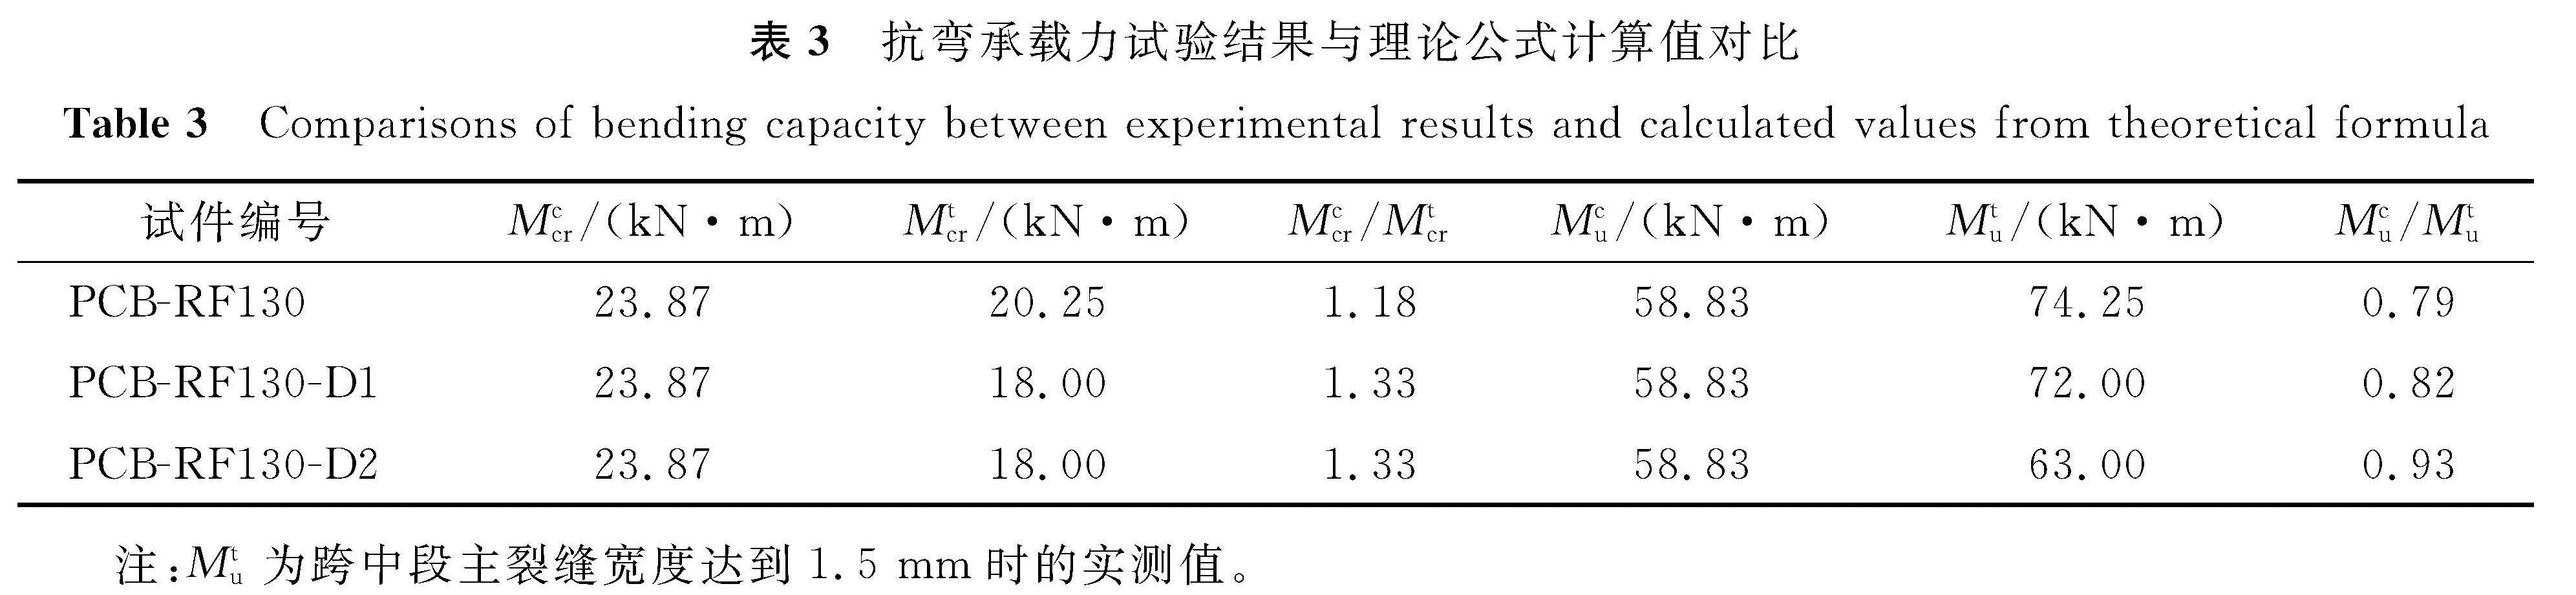 表3 抗弯承载力试验结果与理论公式计算值对比<br/>Table 3 Comparisons of bending capacity between experimental results and calculated values from theoretical formula